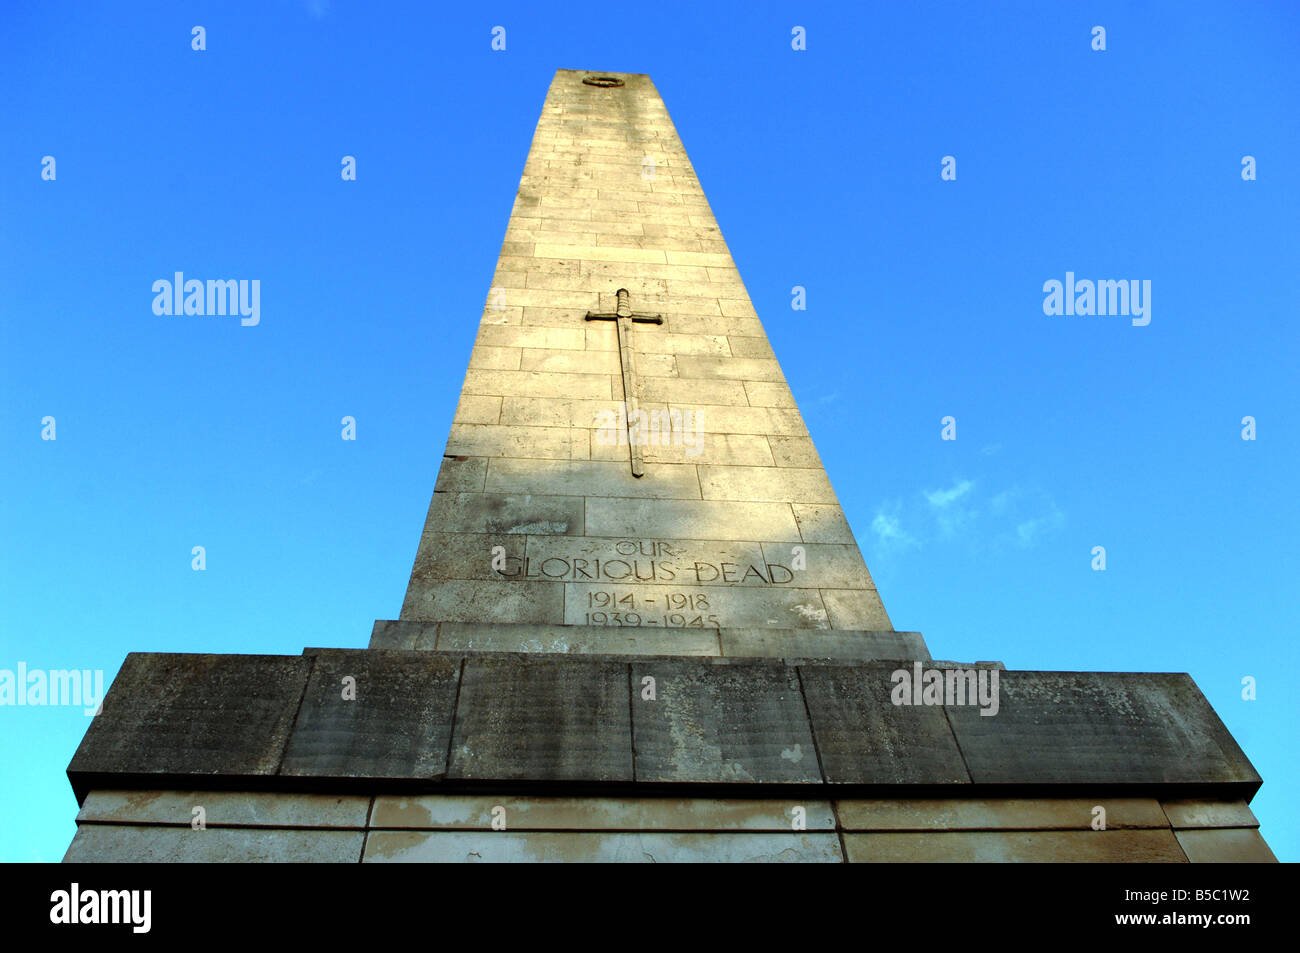 The war memorial at Harrogate in Yorkshire UK Stock Photo